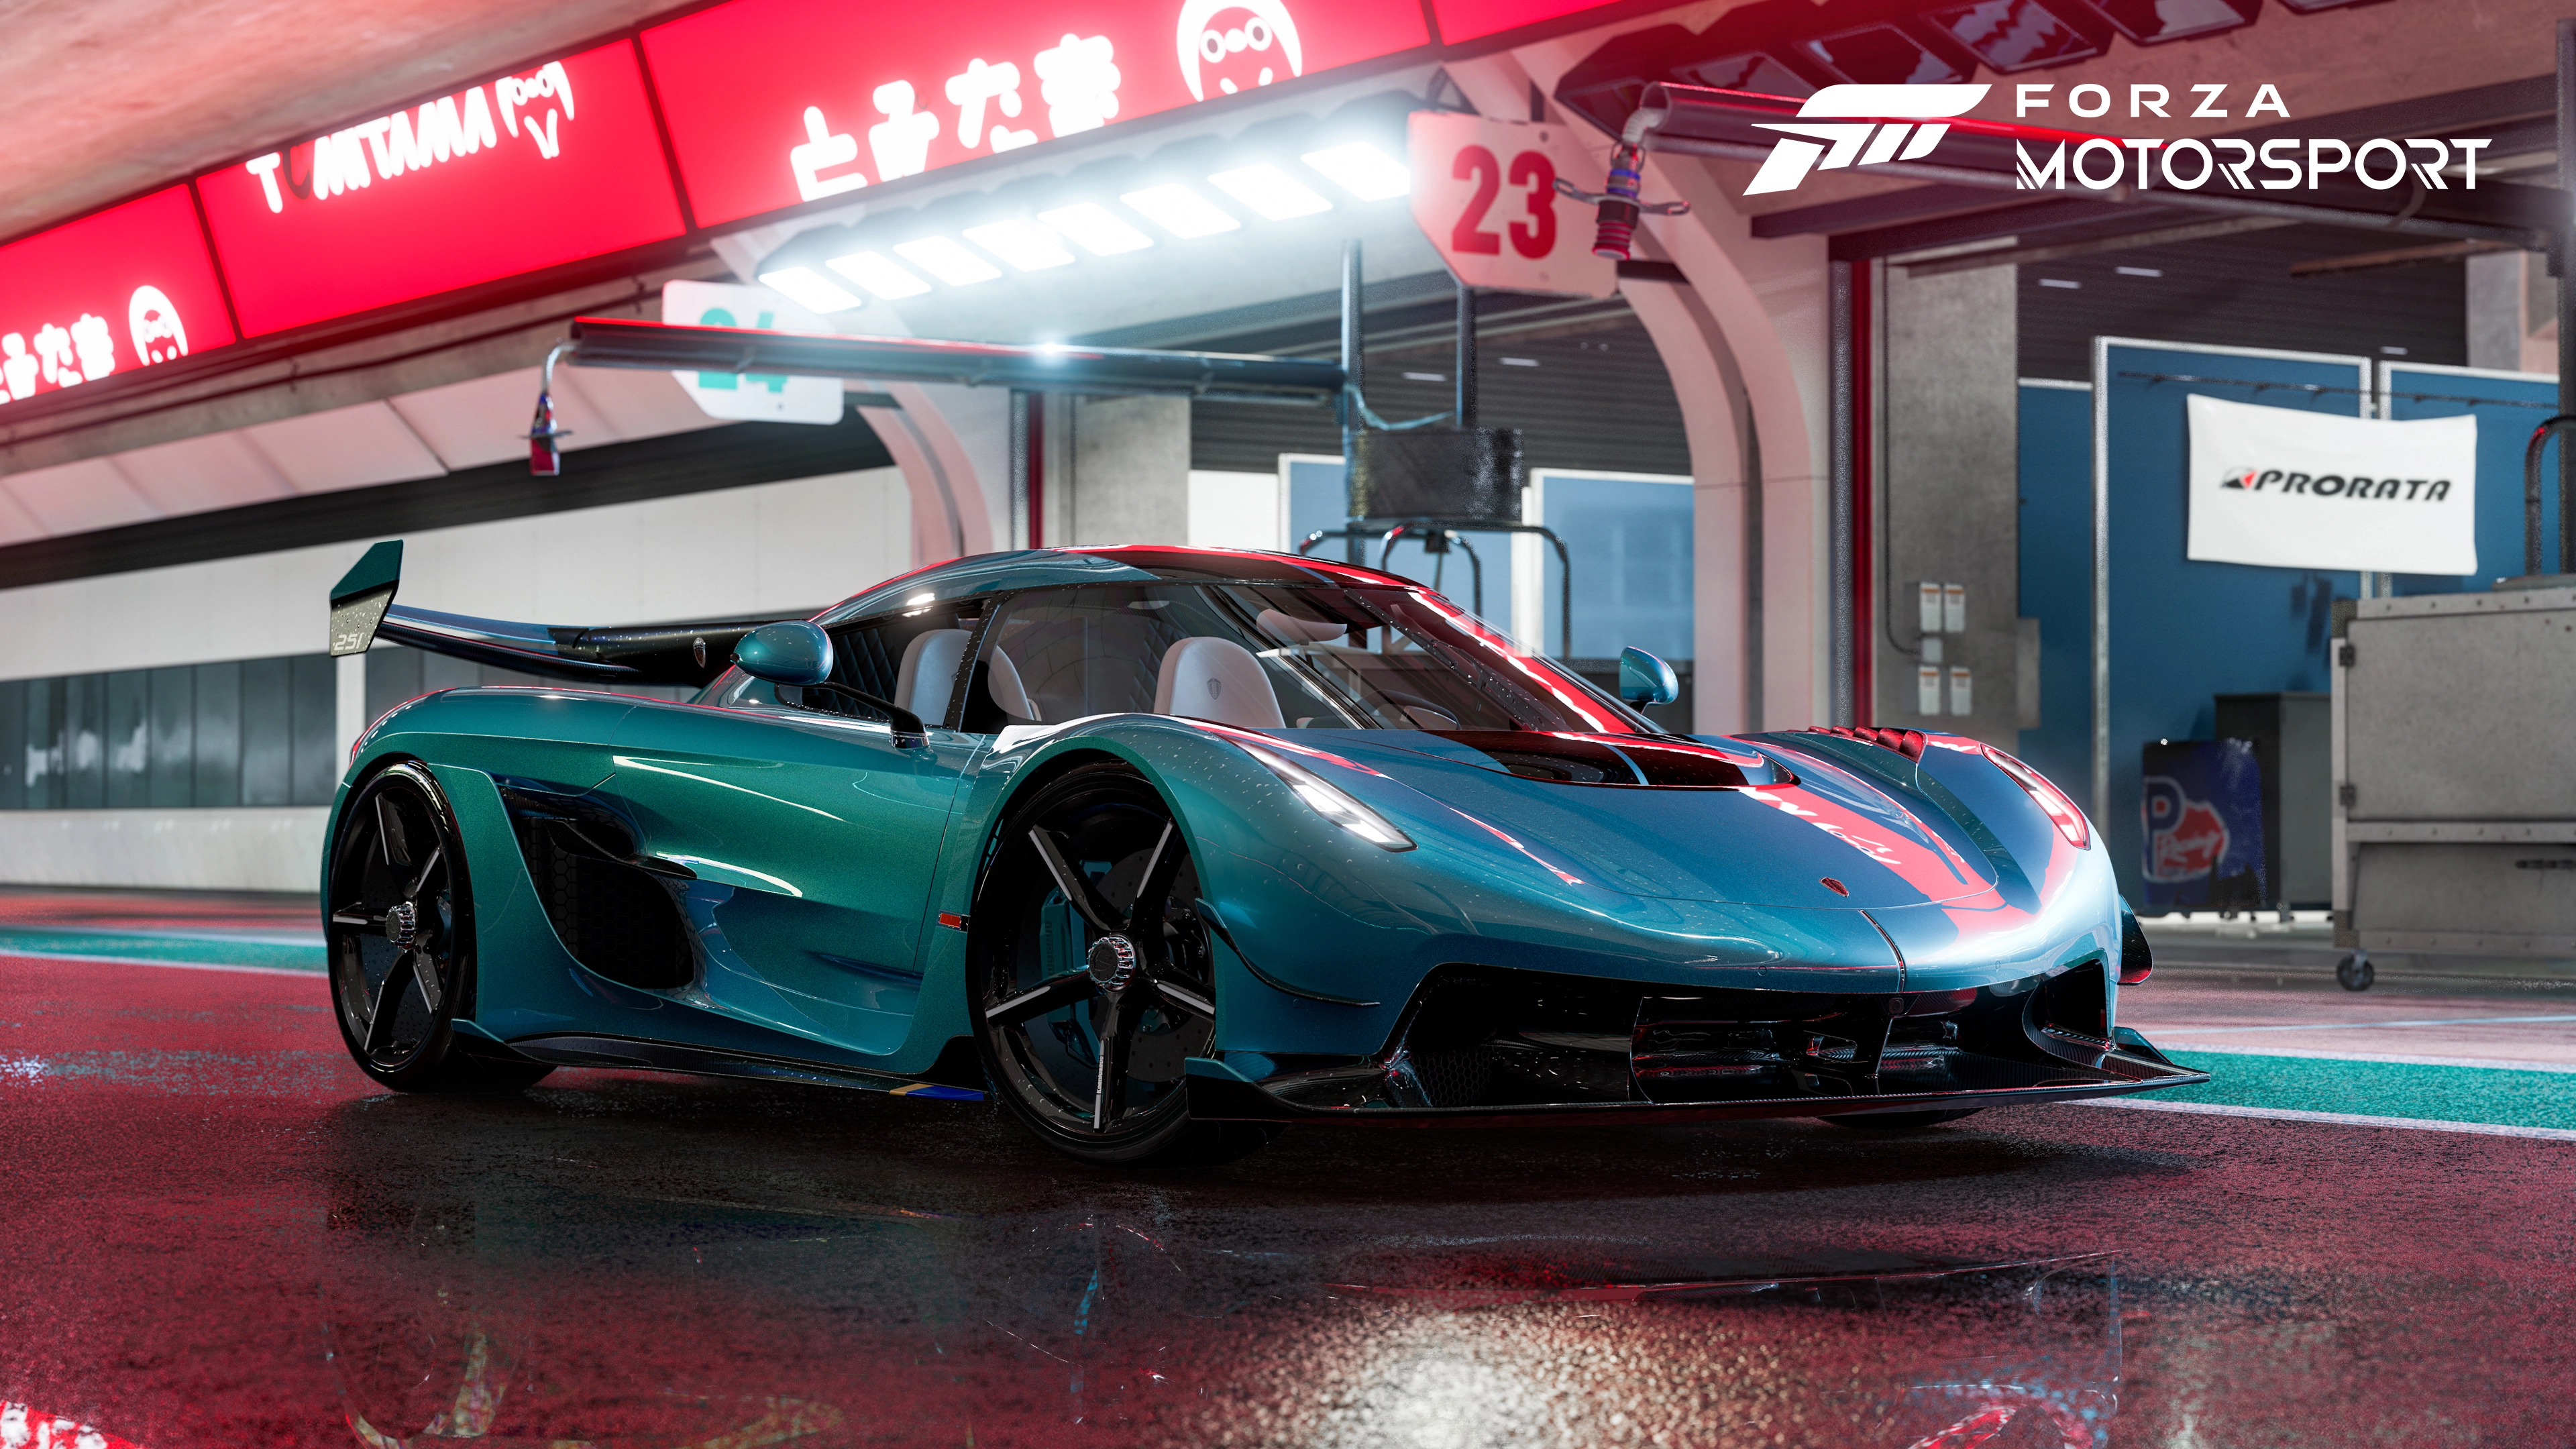 Hình nền Forza Motorsport mang đến cho bạn những bức ảnh nền 4K Ultra HD tuyệt đẹp về các siêu xe nổi tiếng trên thế giới. Với độ chân thật cao và các chi tiết tinh tế, bạn sẽ có được những trải nghiệm tuyệt vời trên màn hình máy tính của mình. Nhanh tay tìm hiểu để sở hữu những hình ảnh độc đáo này.